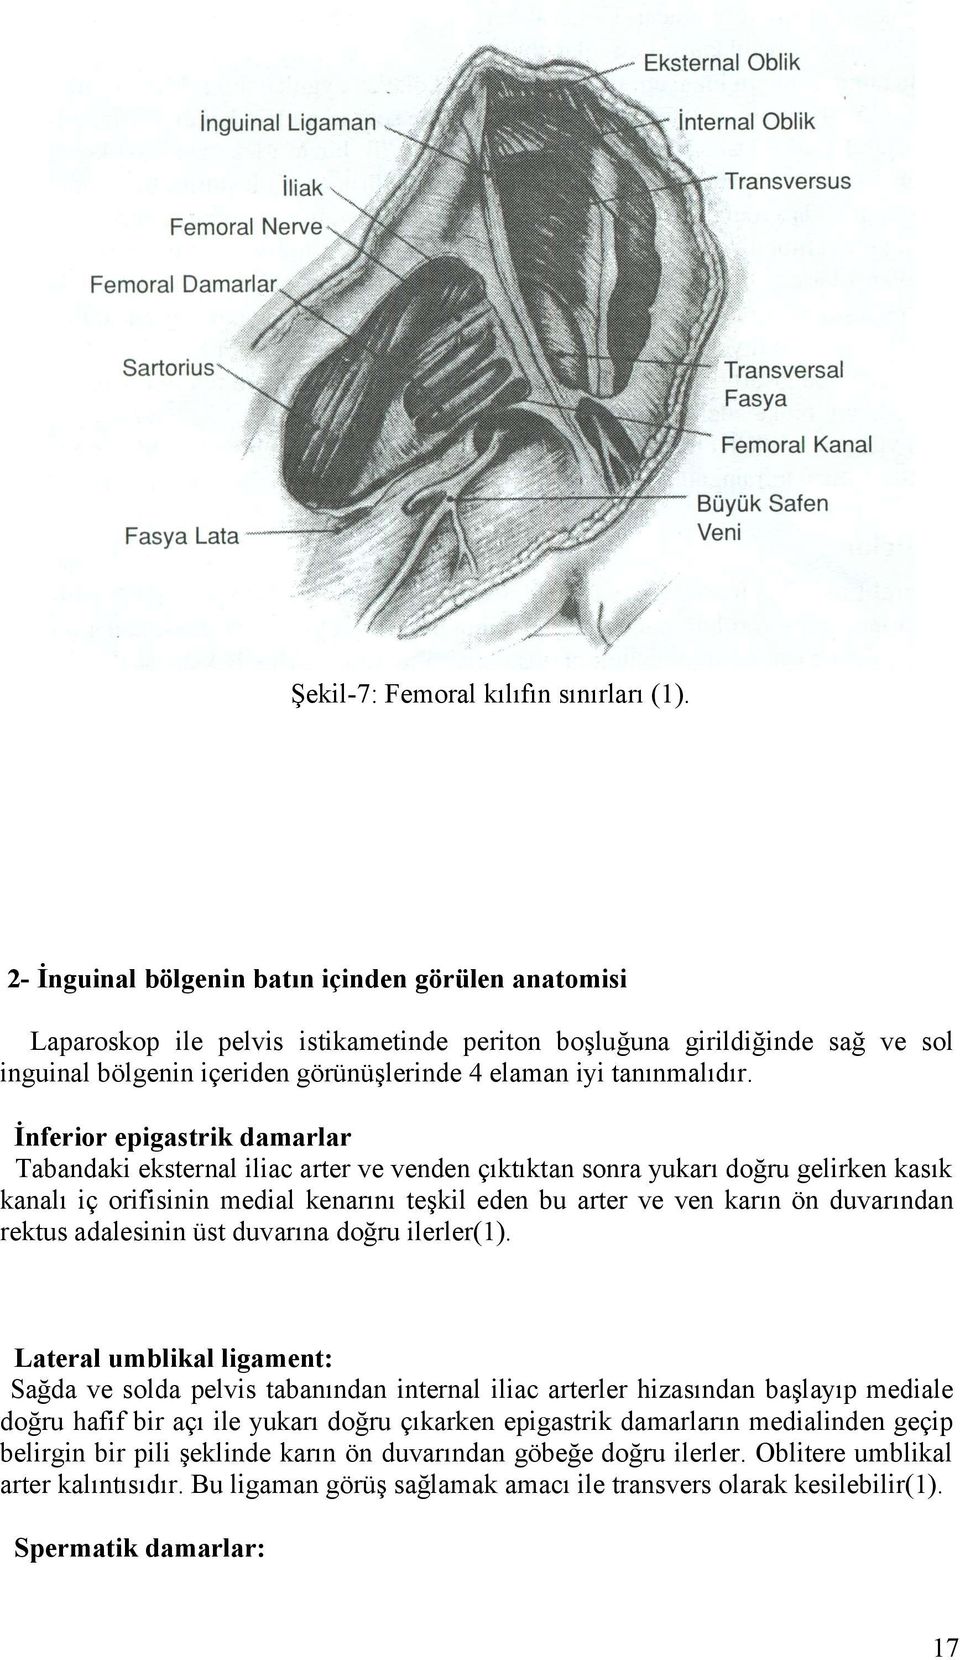 İnferior epigastrik damarlar Tabandaki eksternal iliac arter ve venden çıktıktan sonra yukarı doğru gelirken kasık kanalı iç orifisinin medial kenarını teşkil eden bu arter ve ven karın ön duvarından